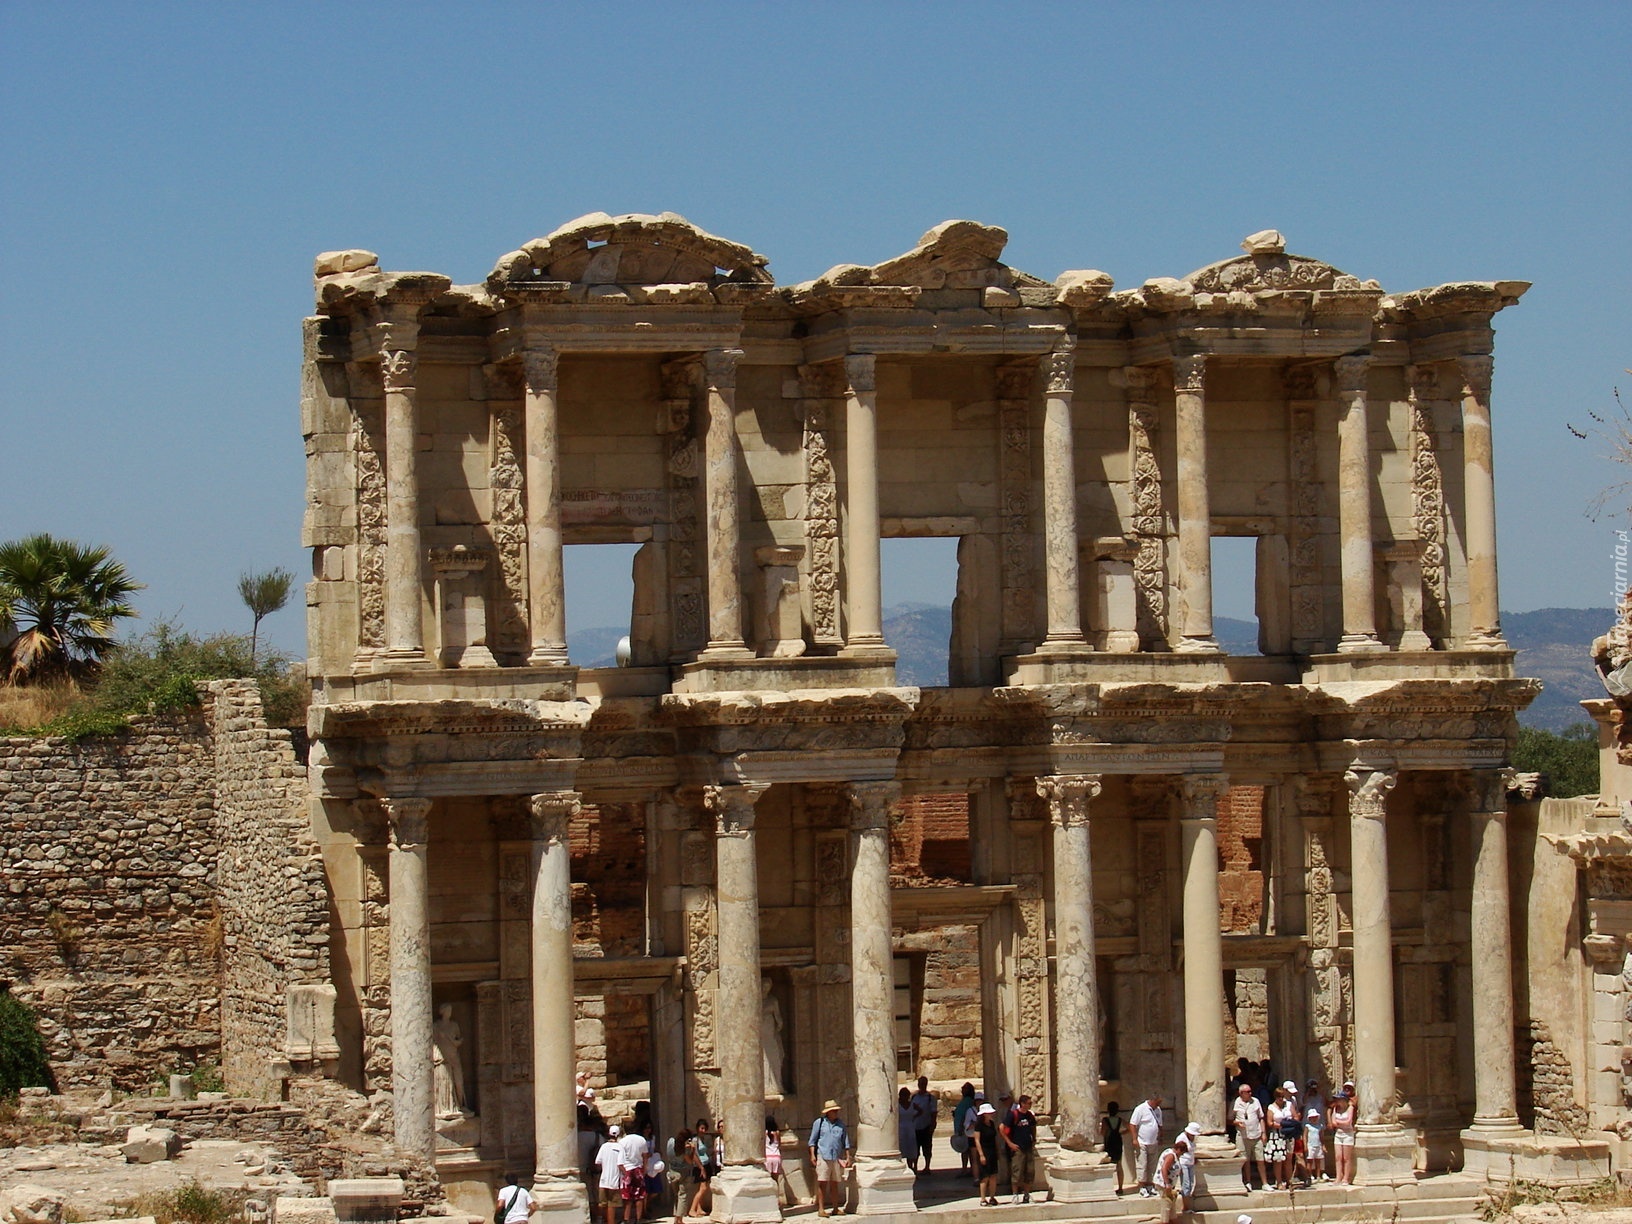 Biblioteka Celcjusza w Efezie